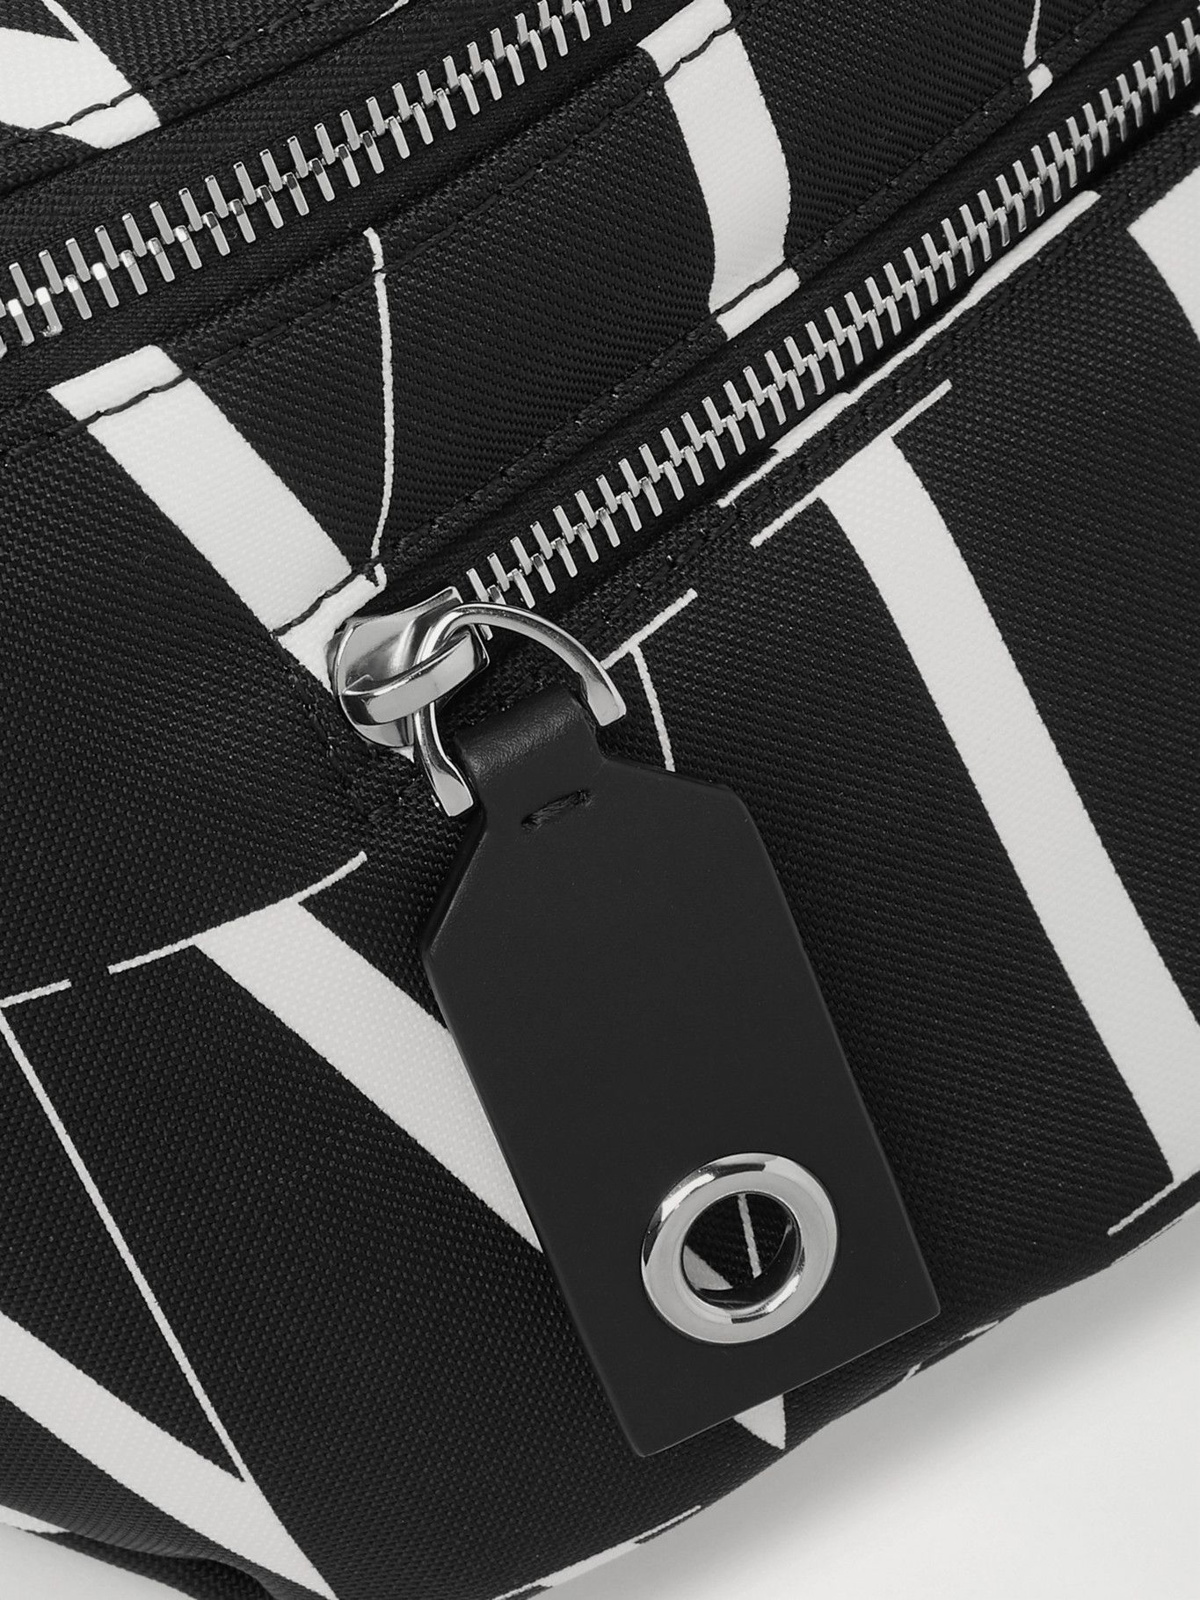 Valentino Garavani Men's Vltn Nylon Travel Bag - Black White